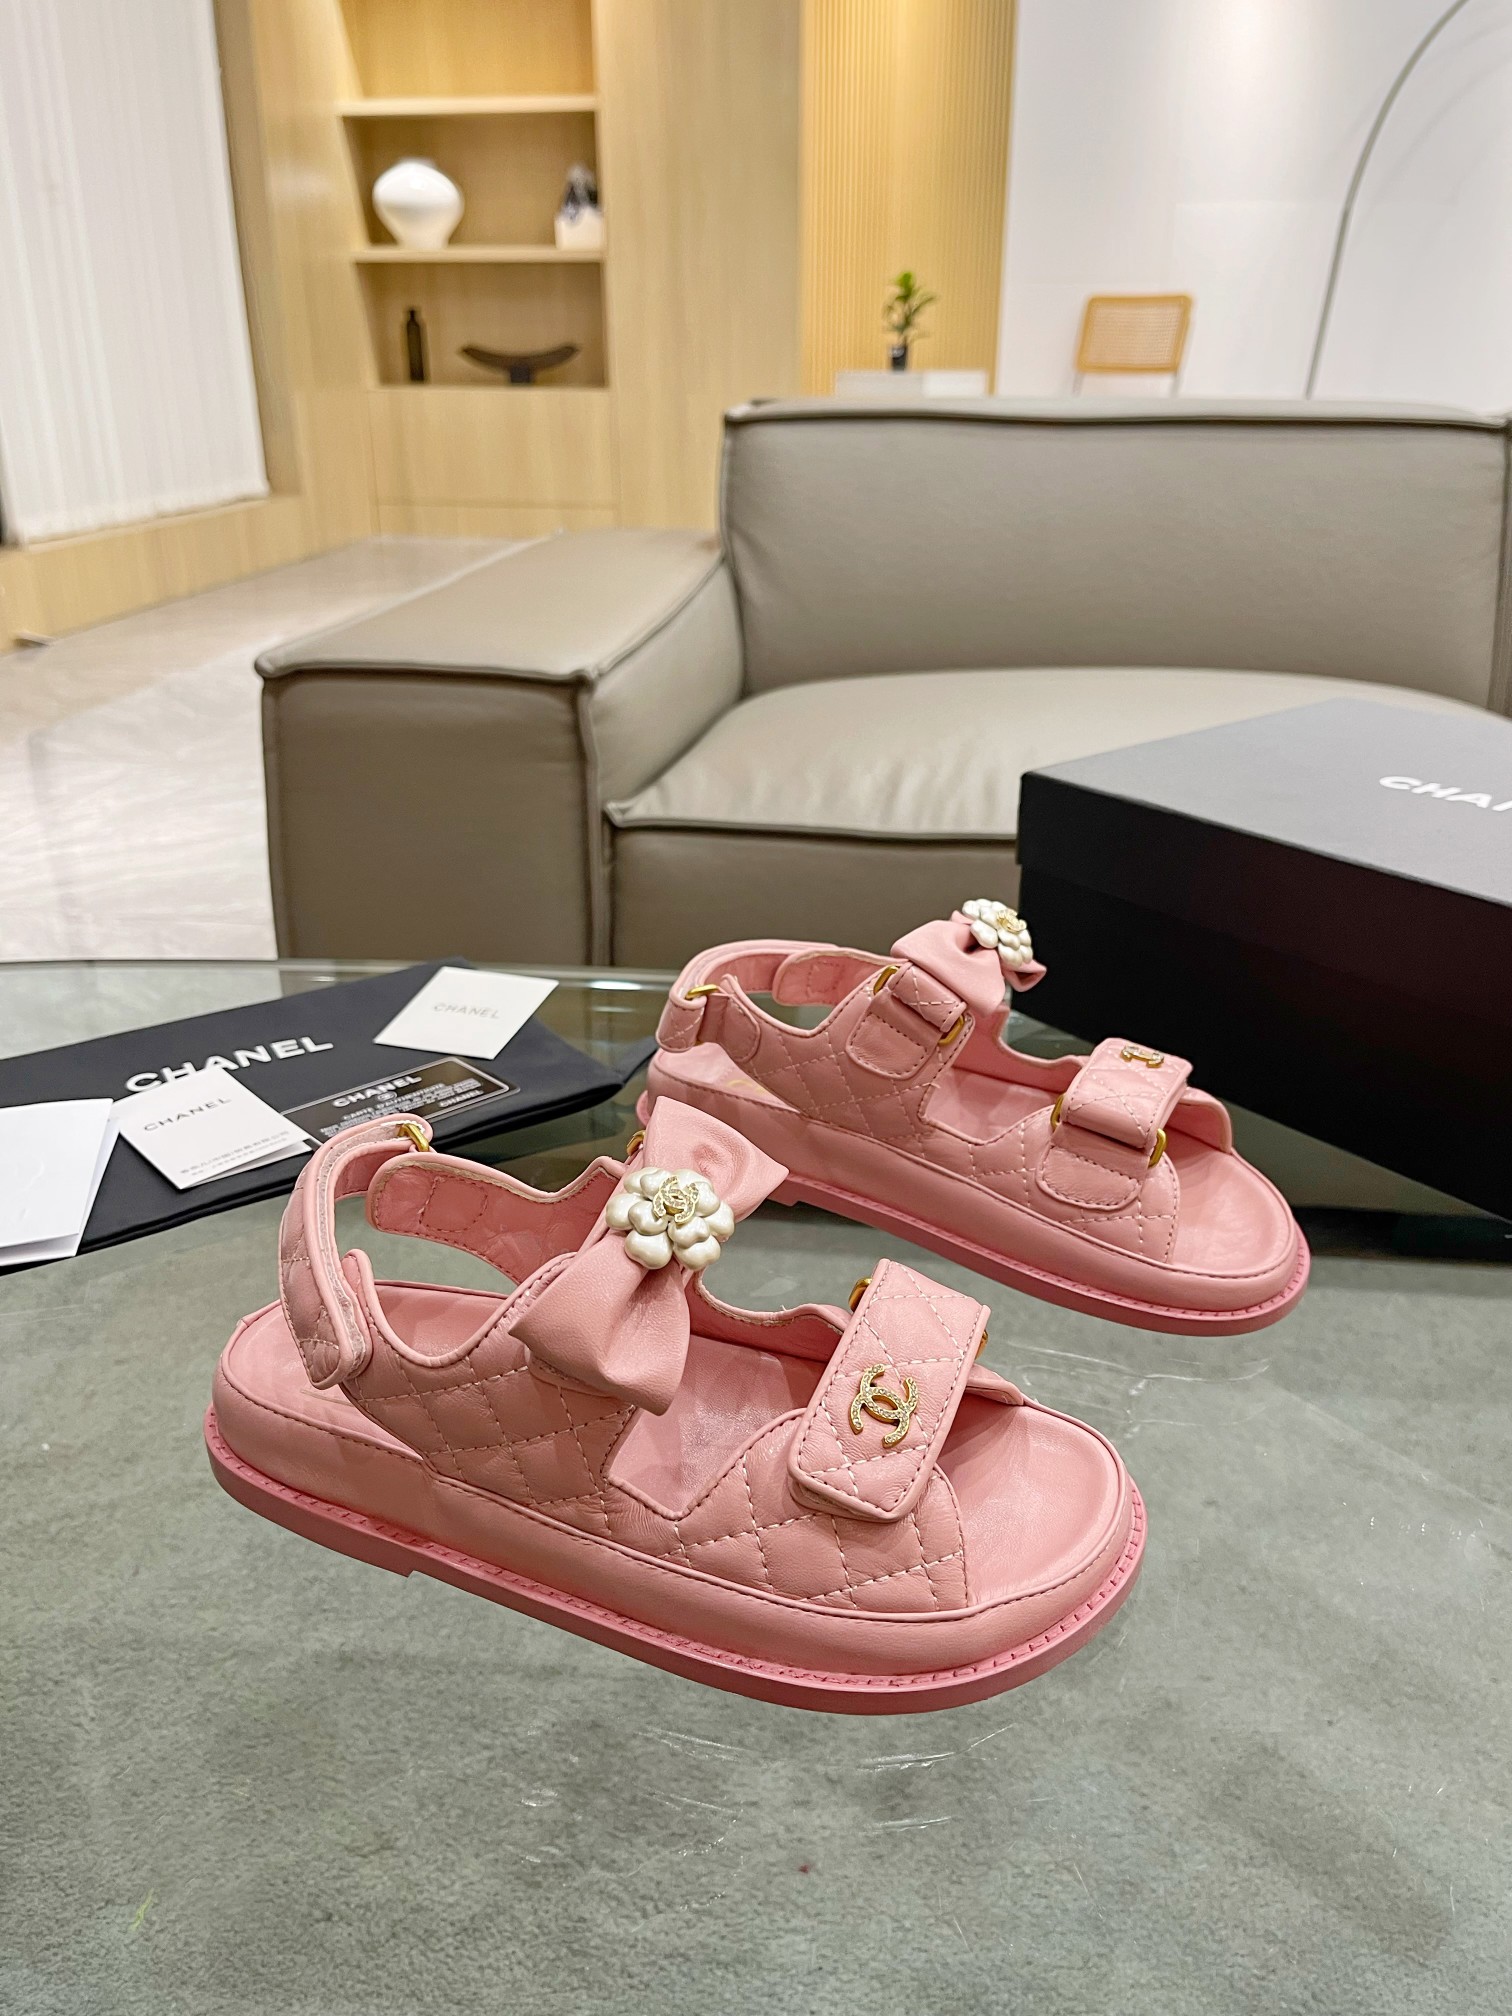 Chanel Zapatos Sandalias Hardware de oro Dermis Piel oveja Colección primavera Playa